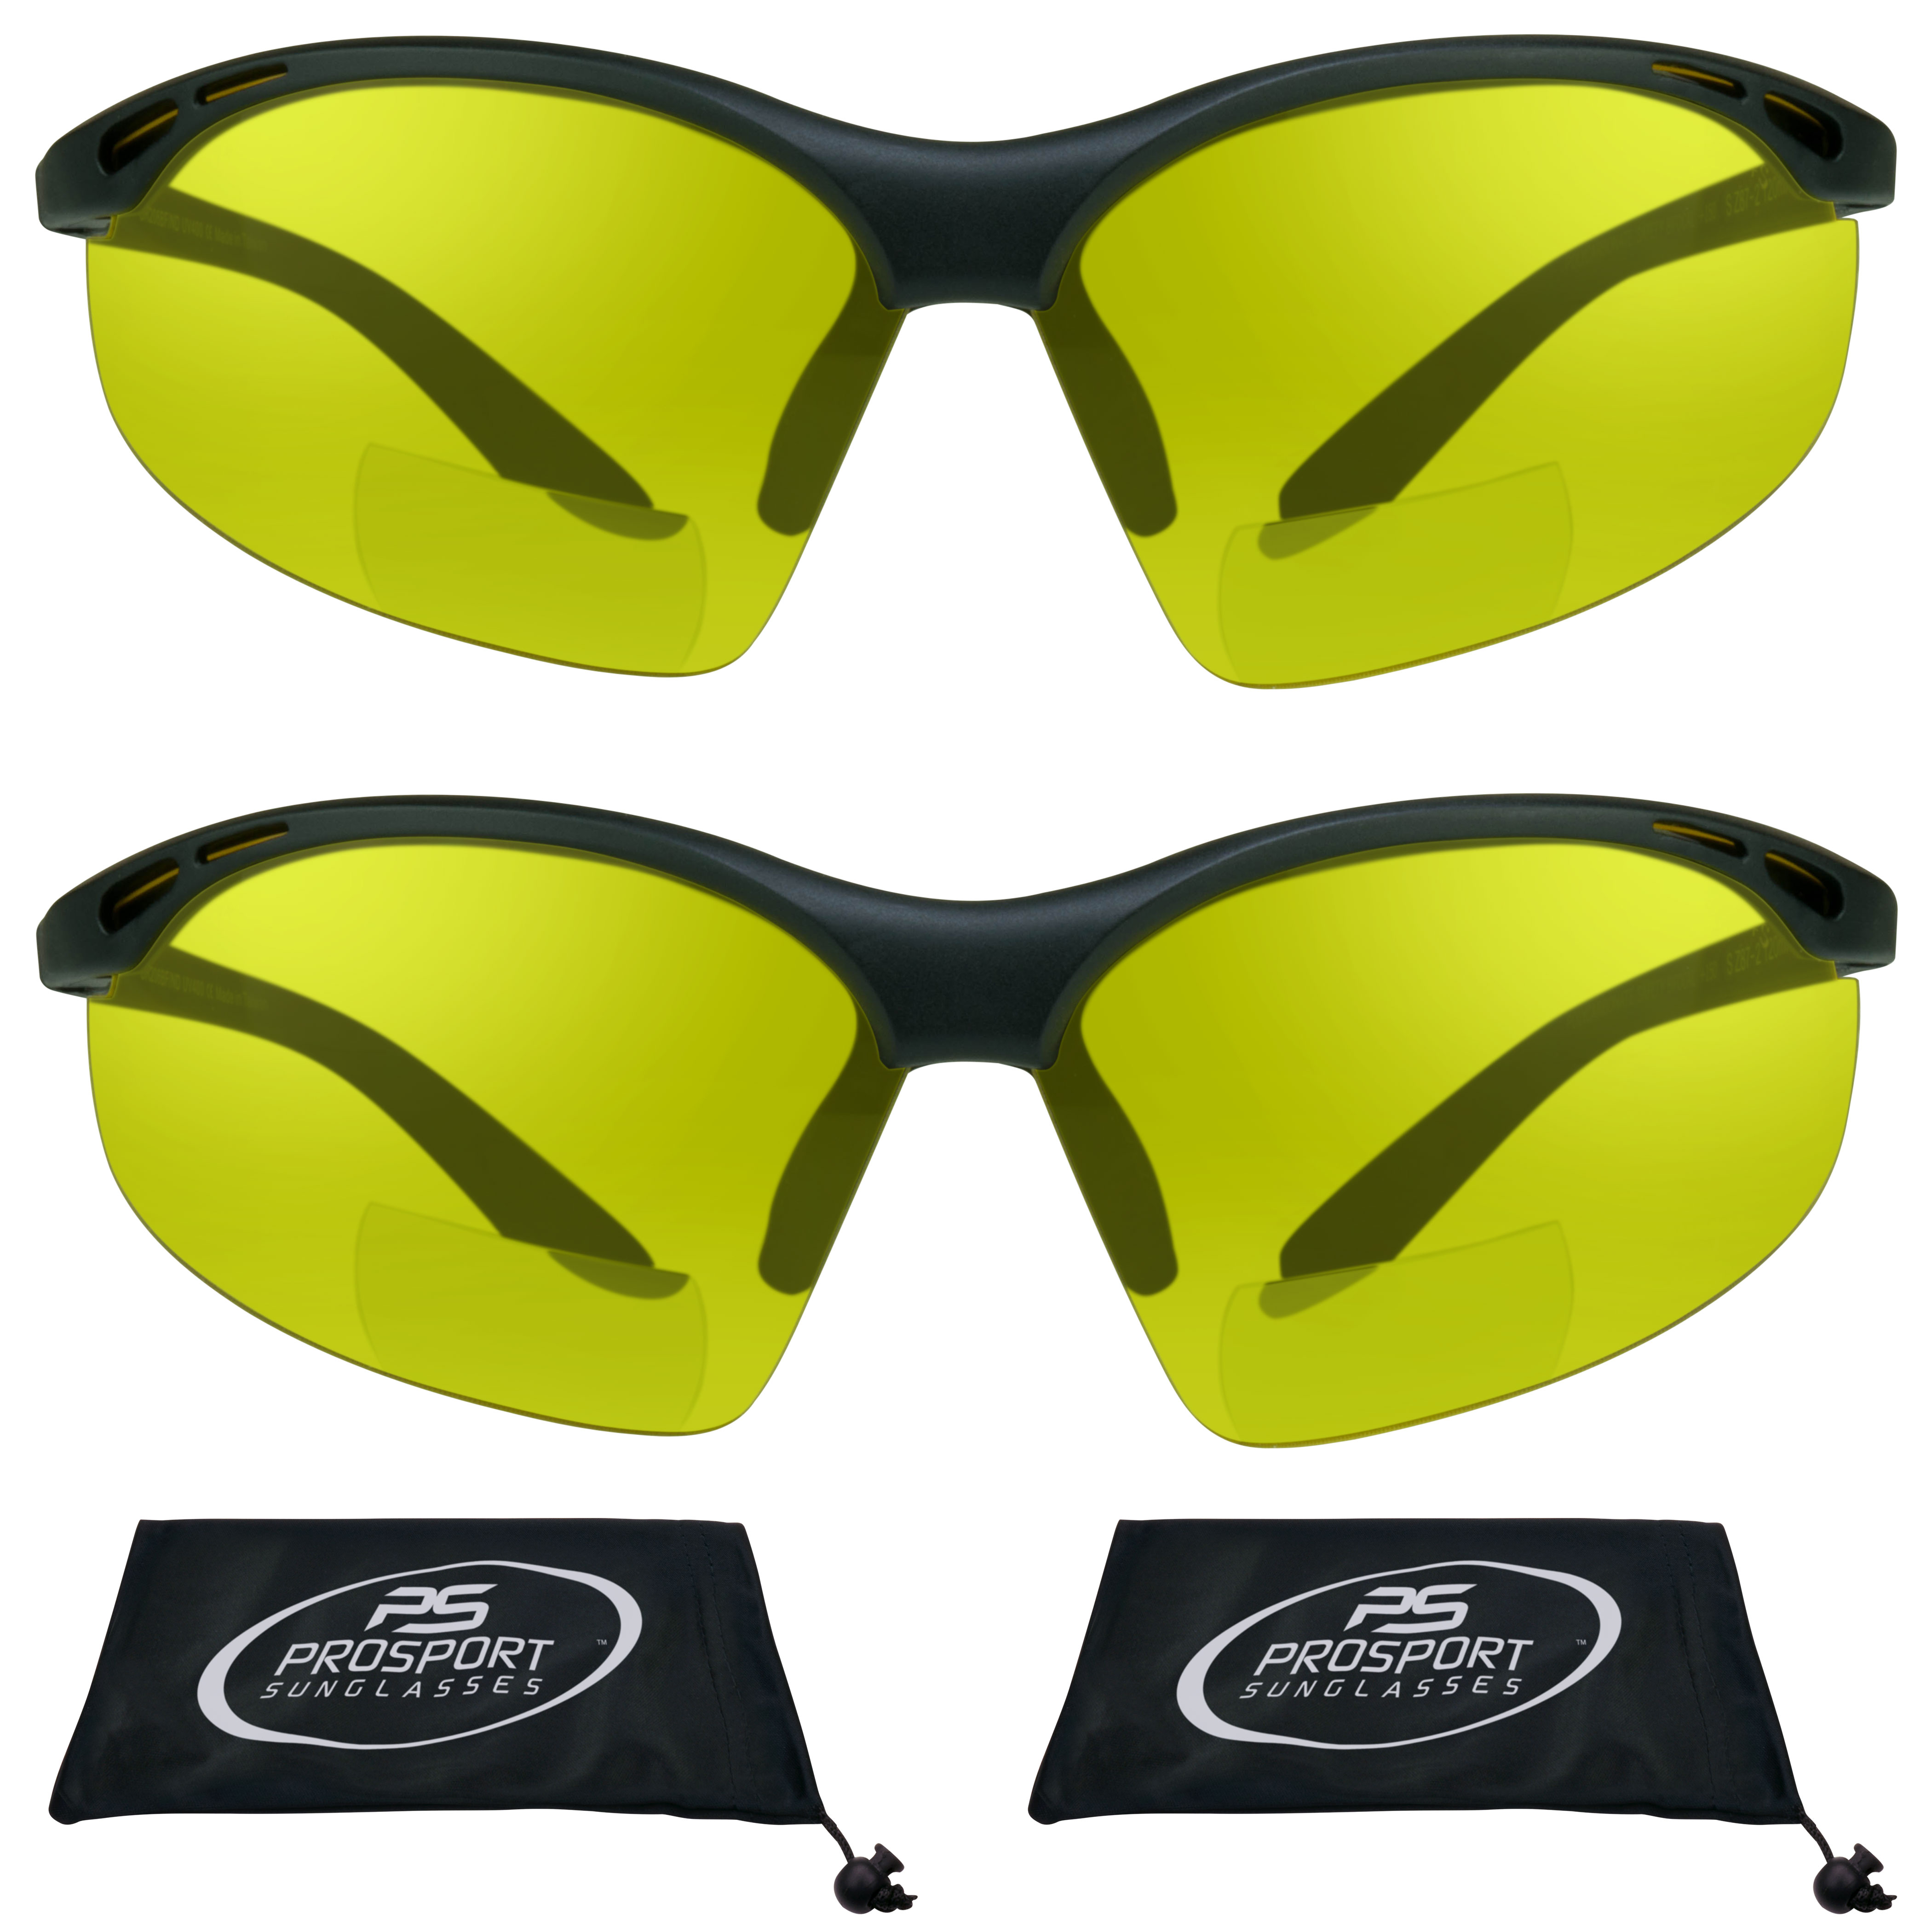 proSPORT Bifocal sunglass Safety Reader Z87 Wrap Around No Slip Grip - image 1 of 6